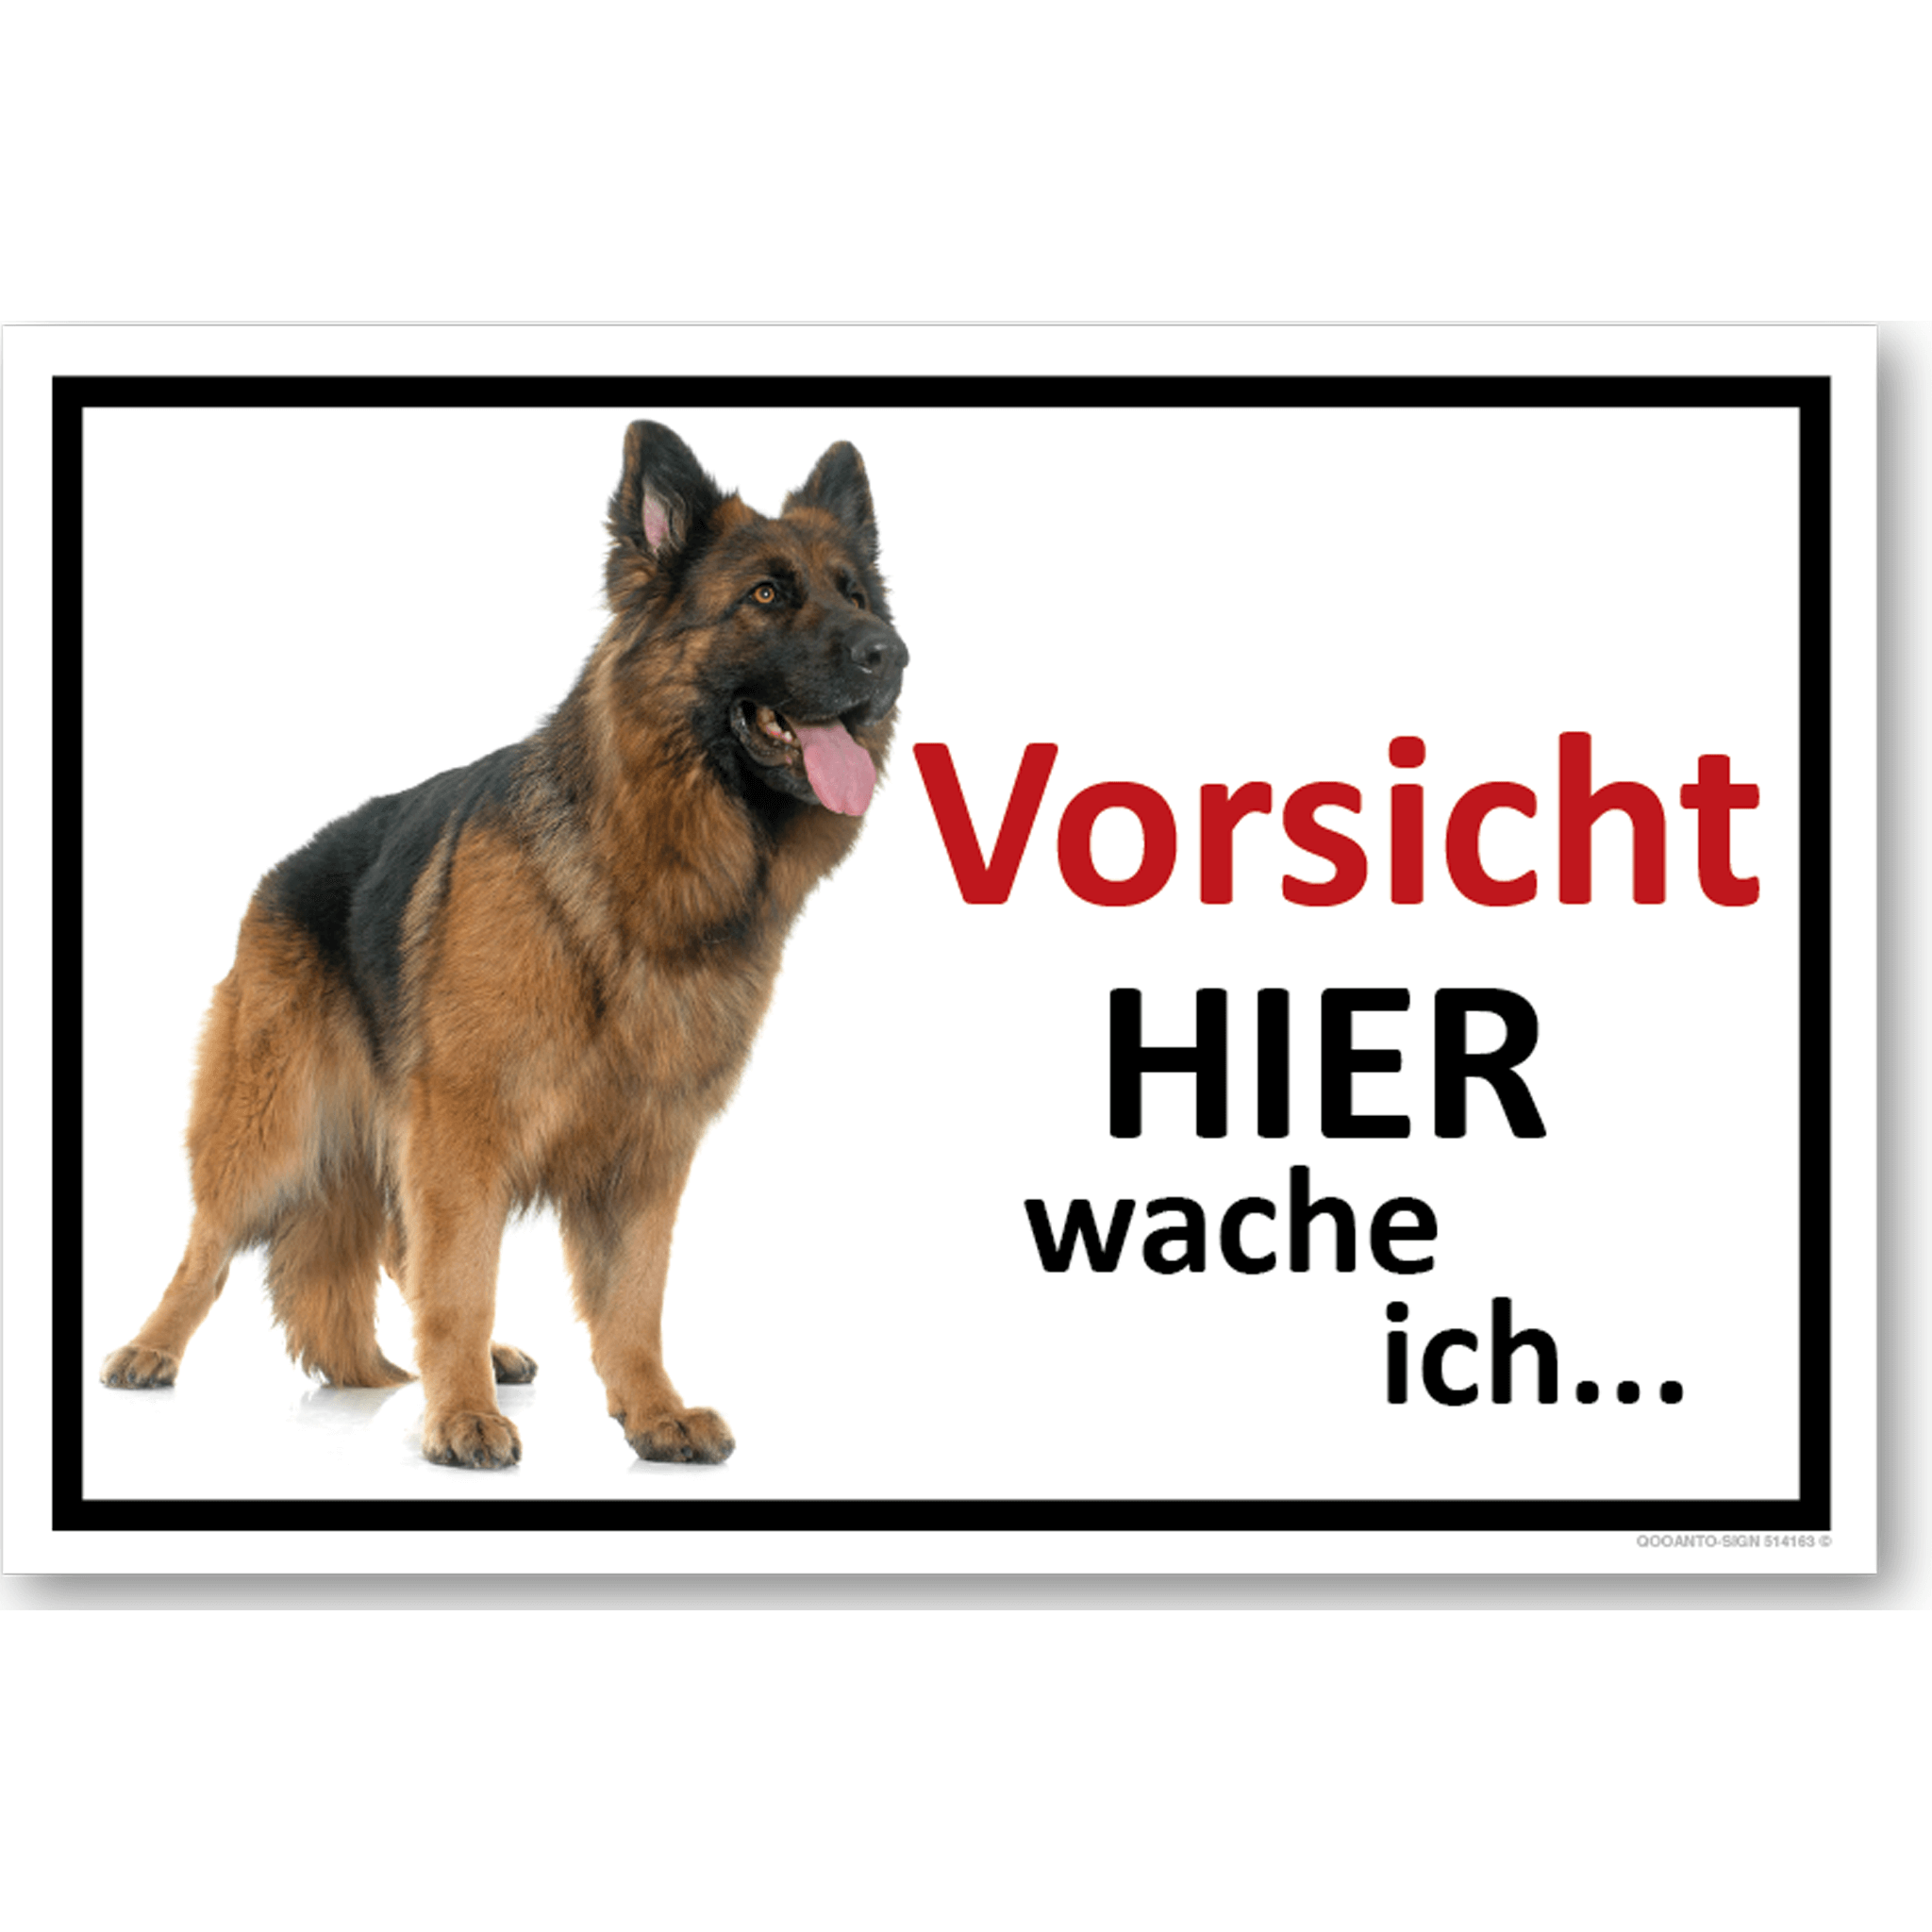 Vorsicht Hier wache ich... Deutscher Schäferhund, Schild oder Aufkleber